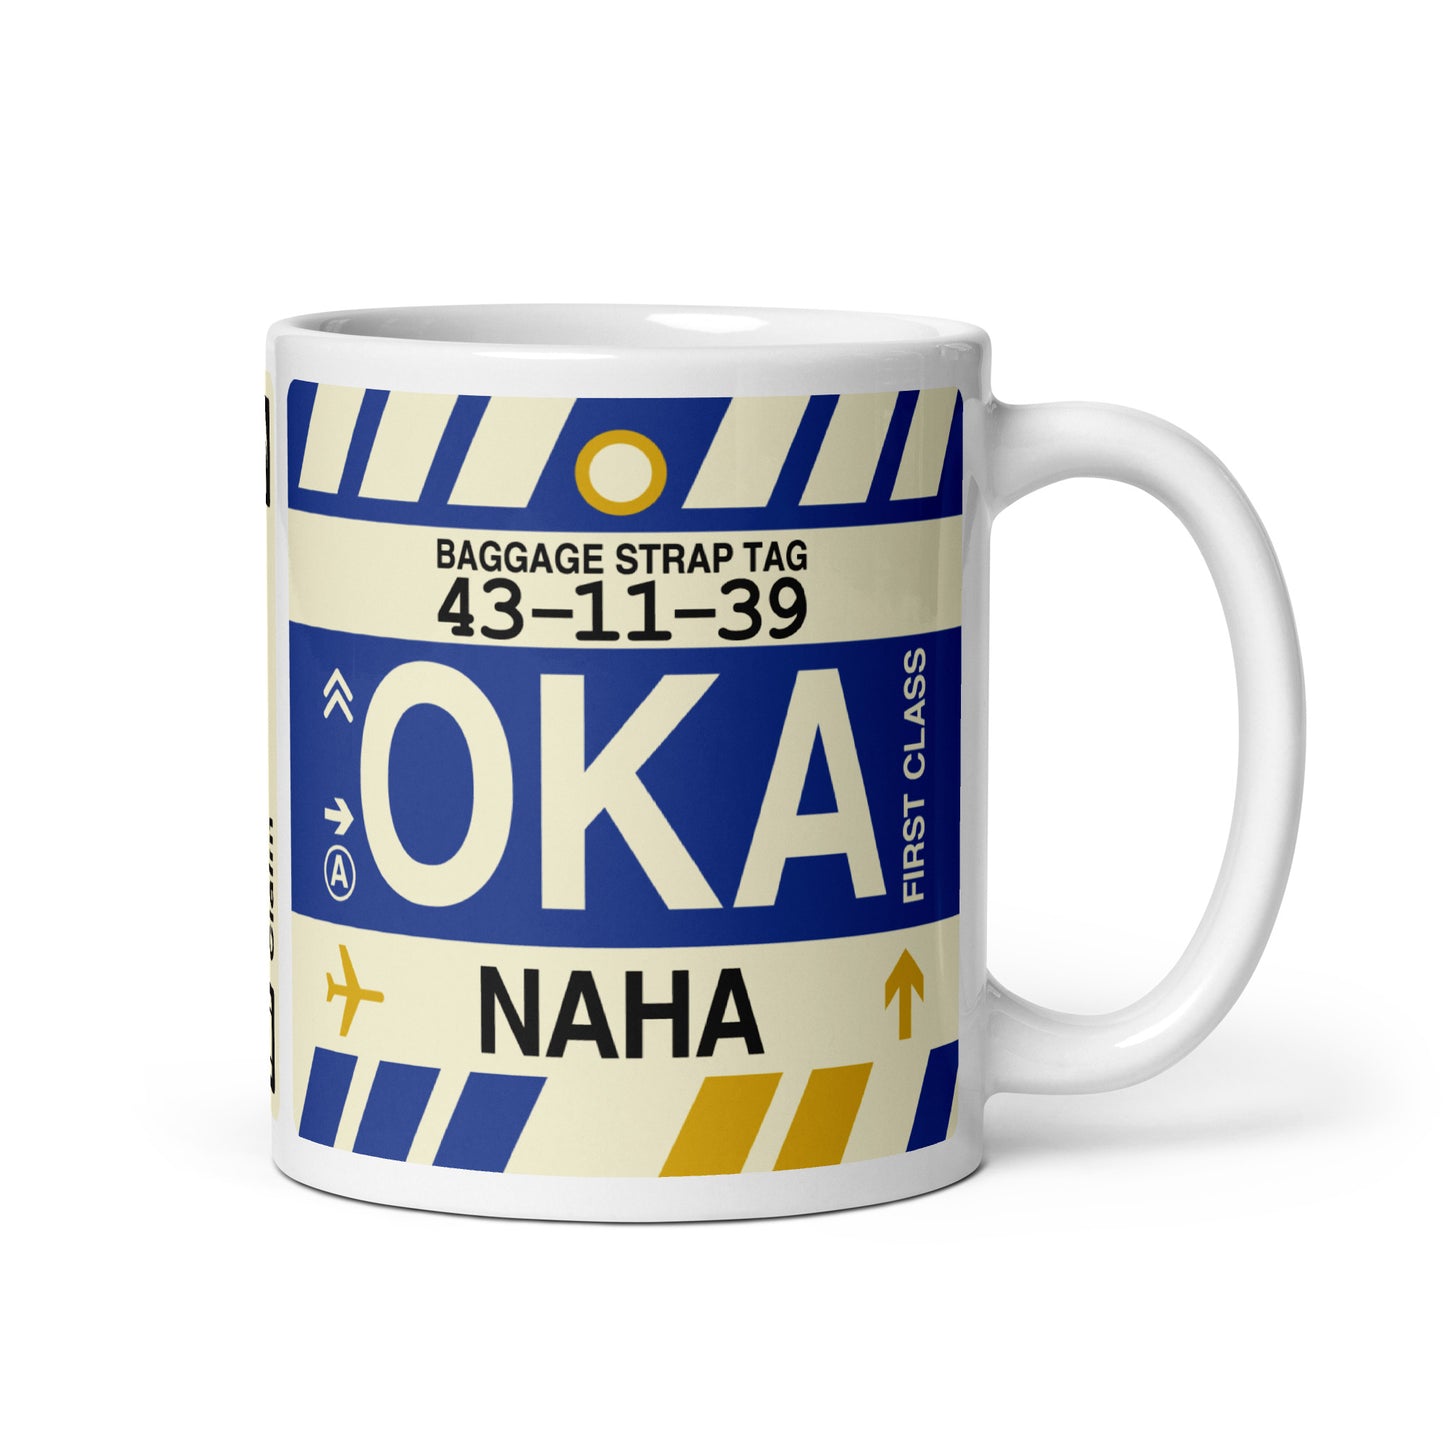 Travel-Themed Coffee Mug • OKA Naha (Okinawa) • YHM Designs - Image 01